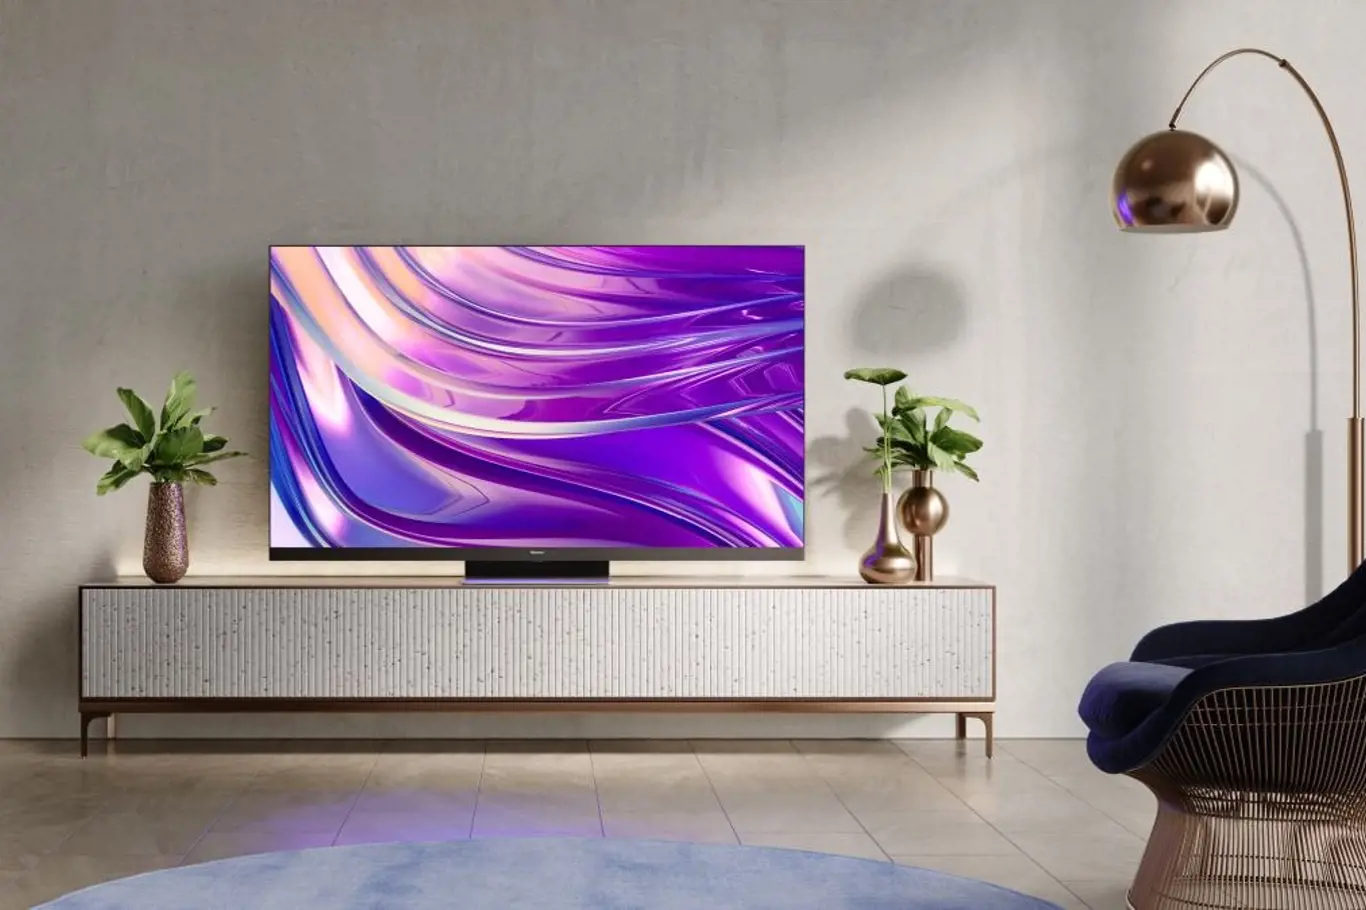 Oceněním Eisa v kategorii výběrových LCD TV se pyšní přístroj Hisense 65U8HQ s mini LED podsvícením obrazovky, kvantovými tečkami i nejrealističtějším prostorovým ozvučením Dolby Atmos.